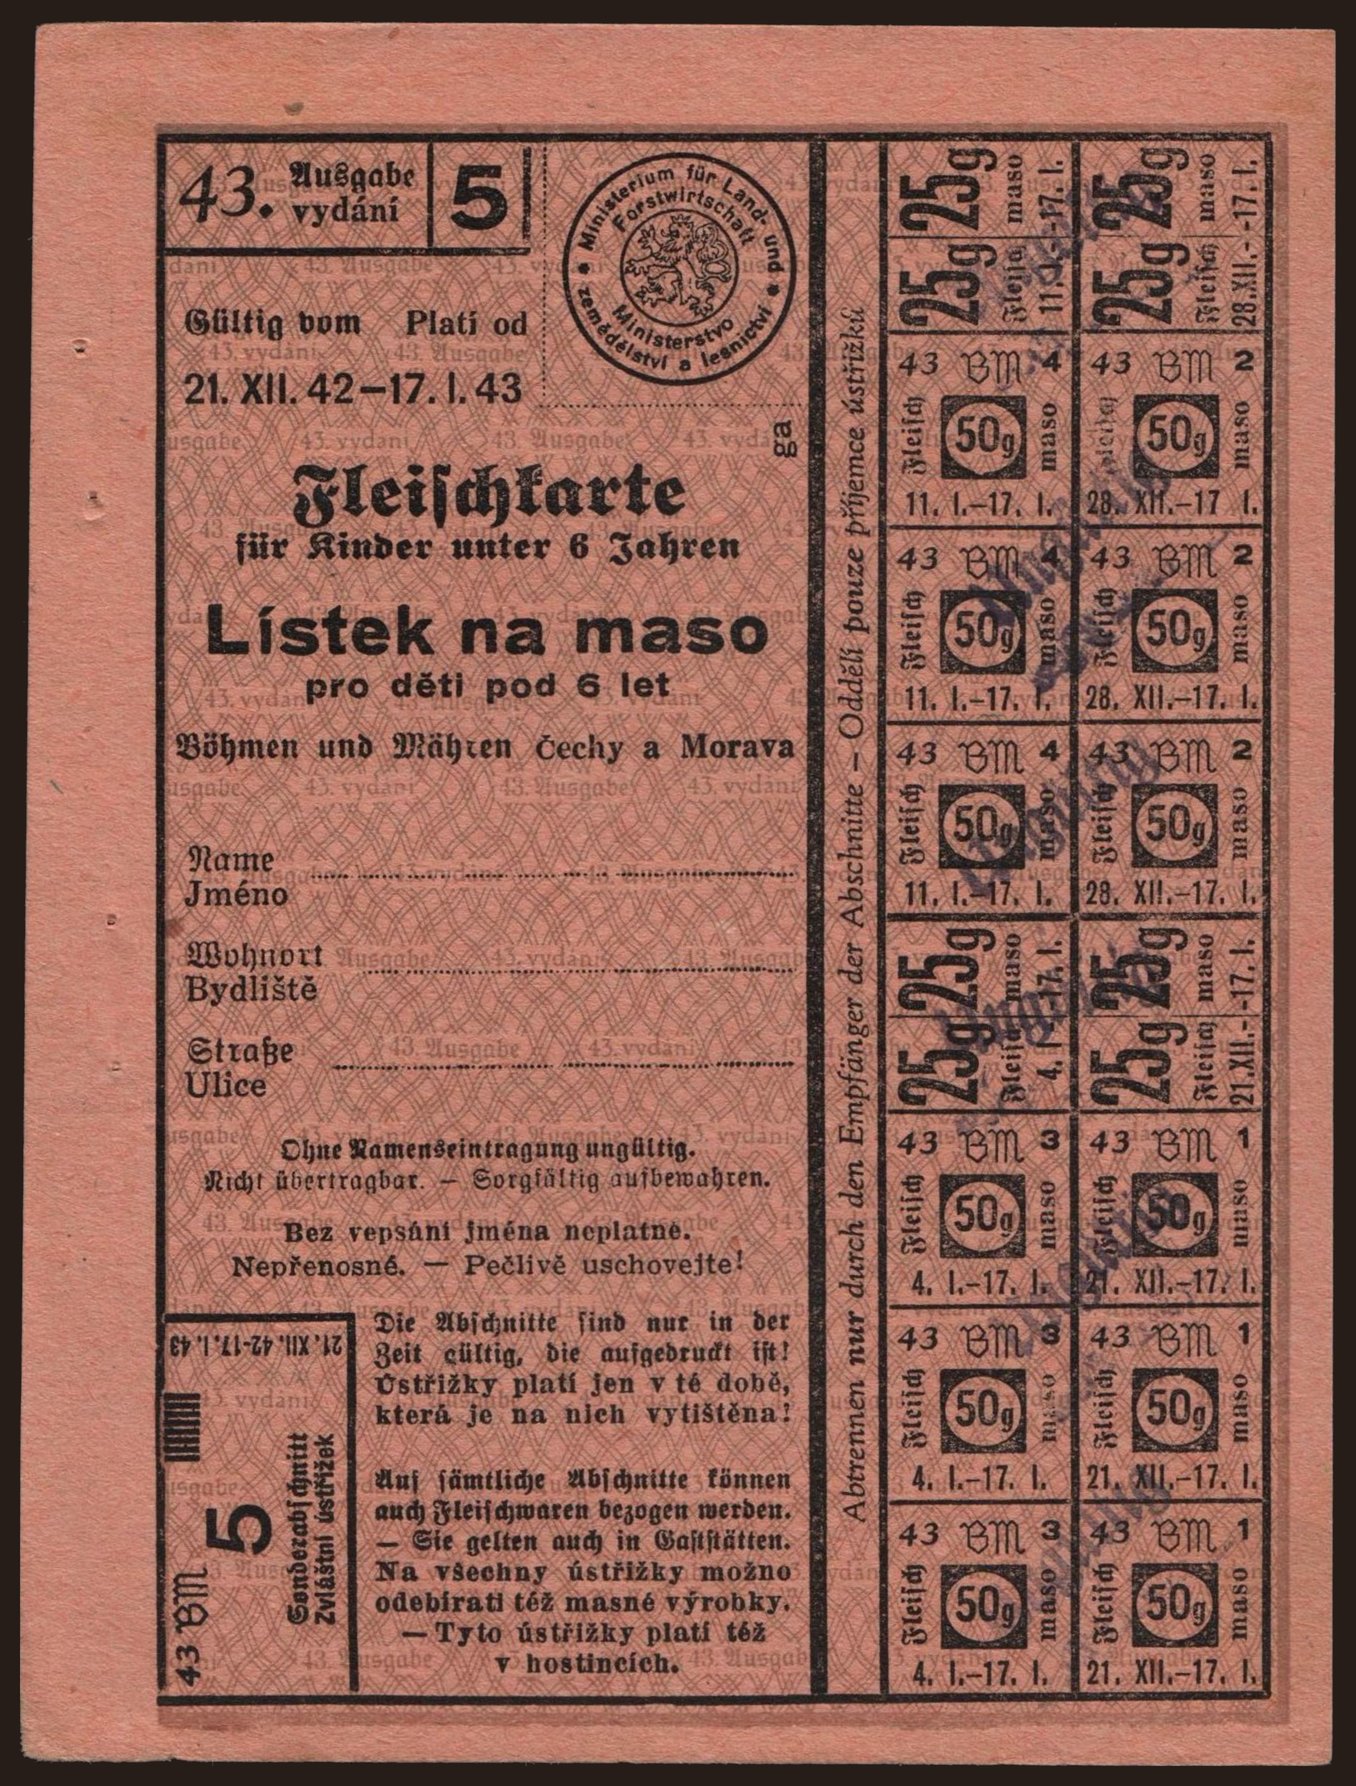 Fleischkarte für Kinder unter 6 Jahren - Lístek na maso pro děti pod 6 let, 1942